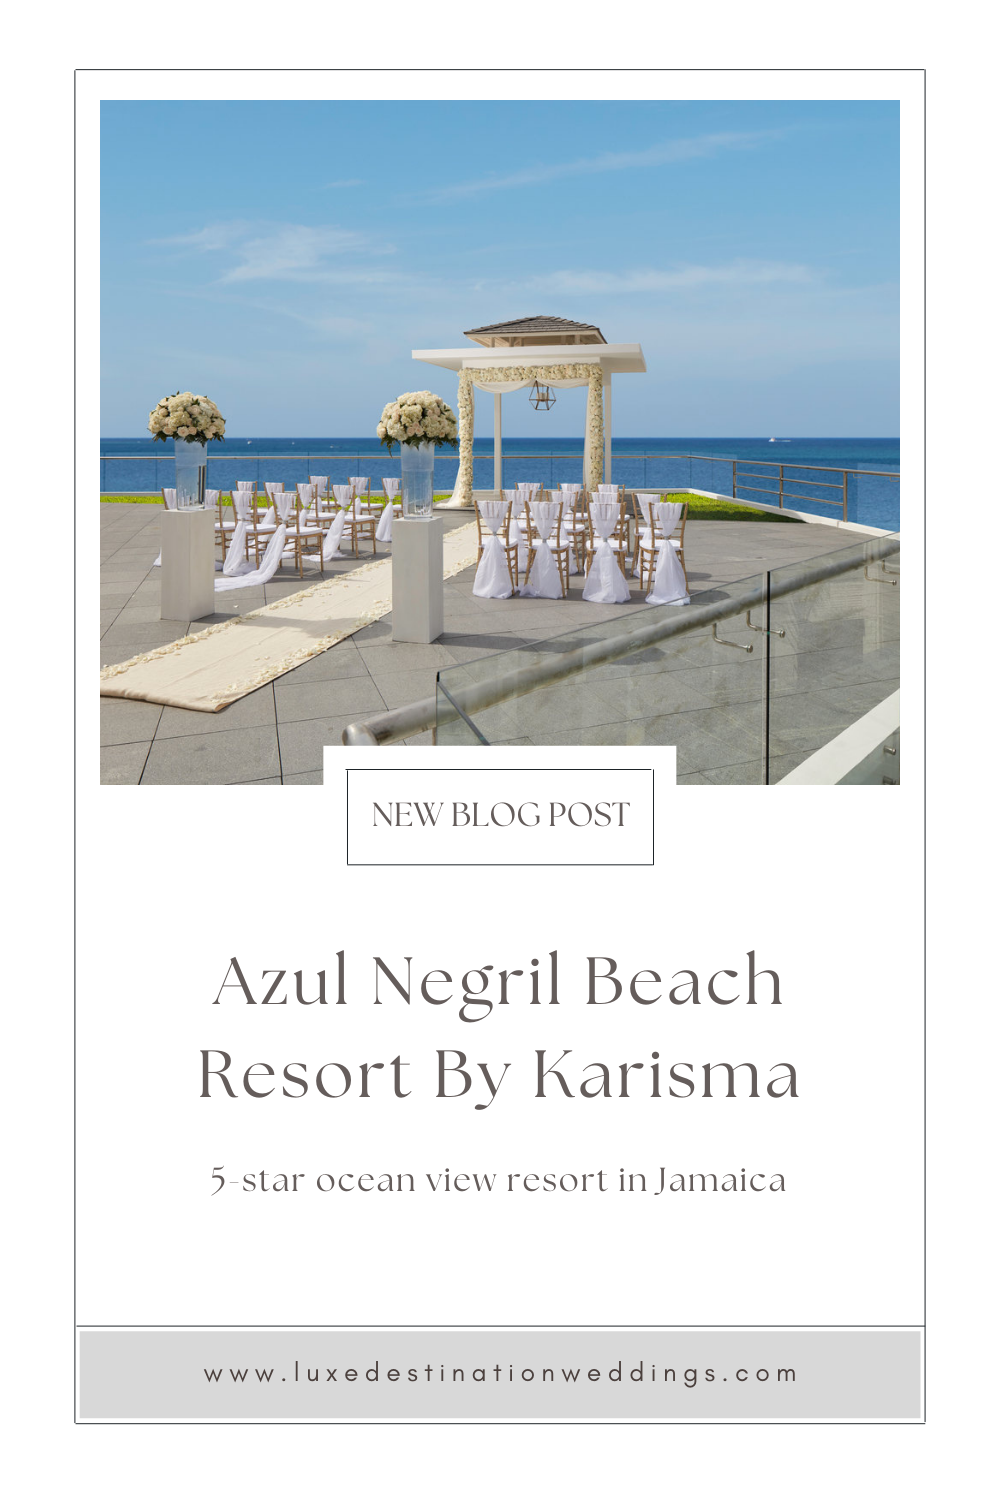 Karisma tweaks names of Azul Beach resorts: Travel Weekly